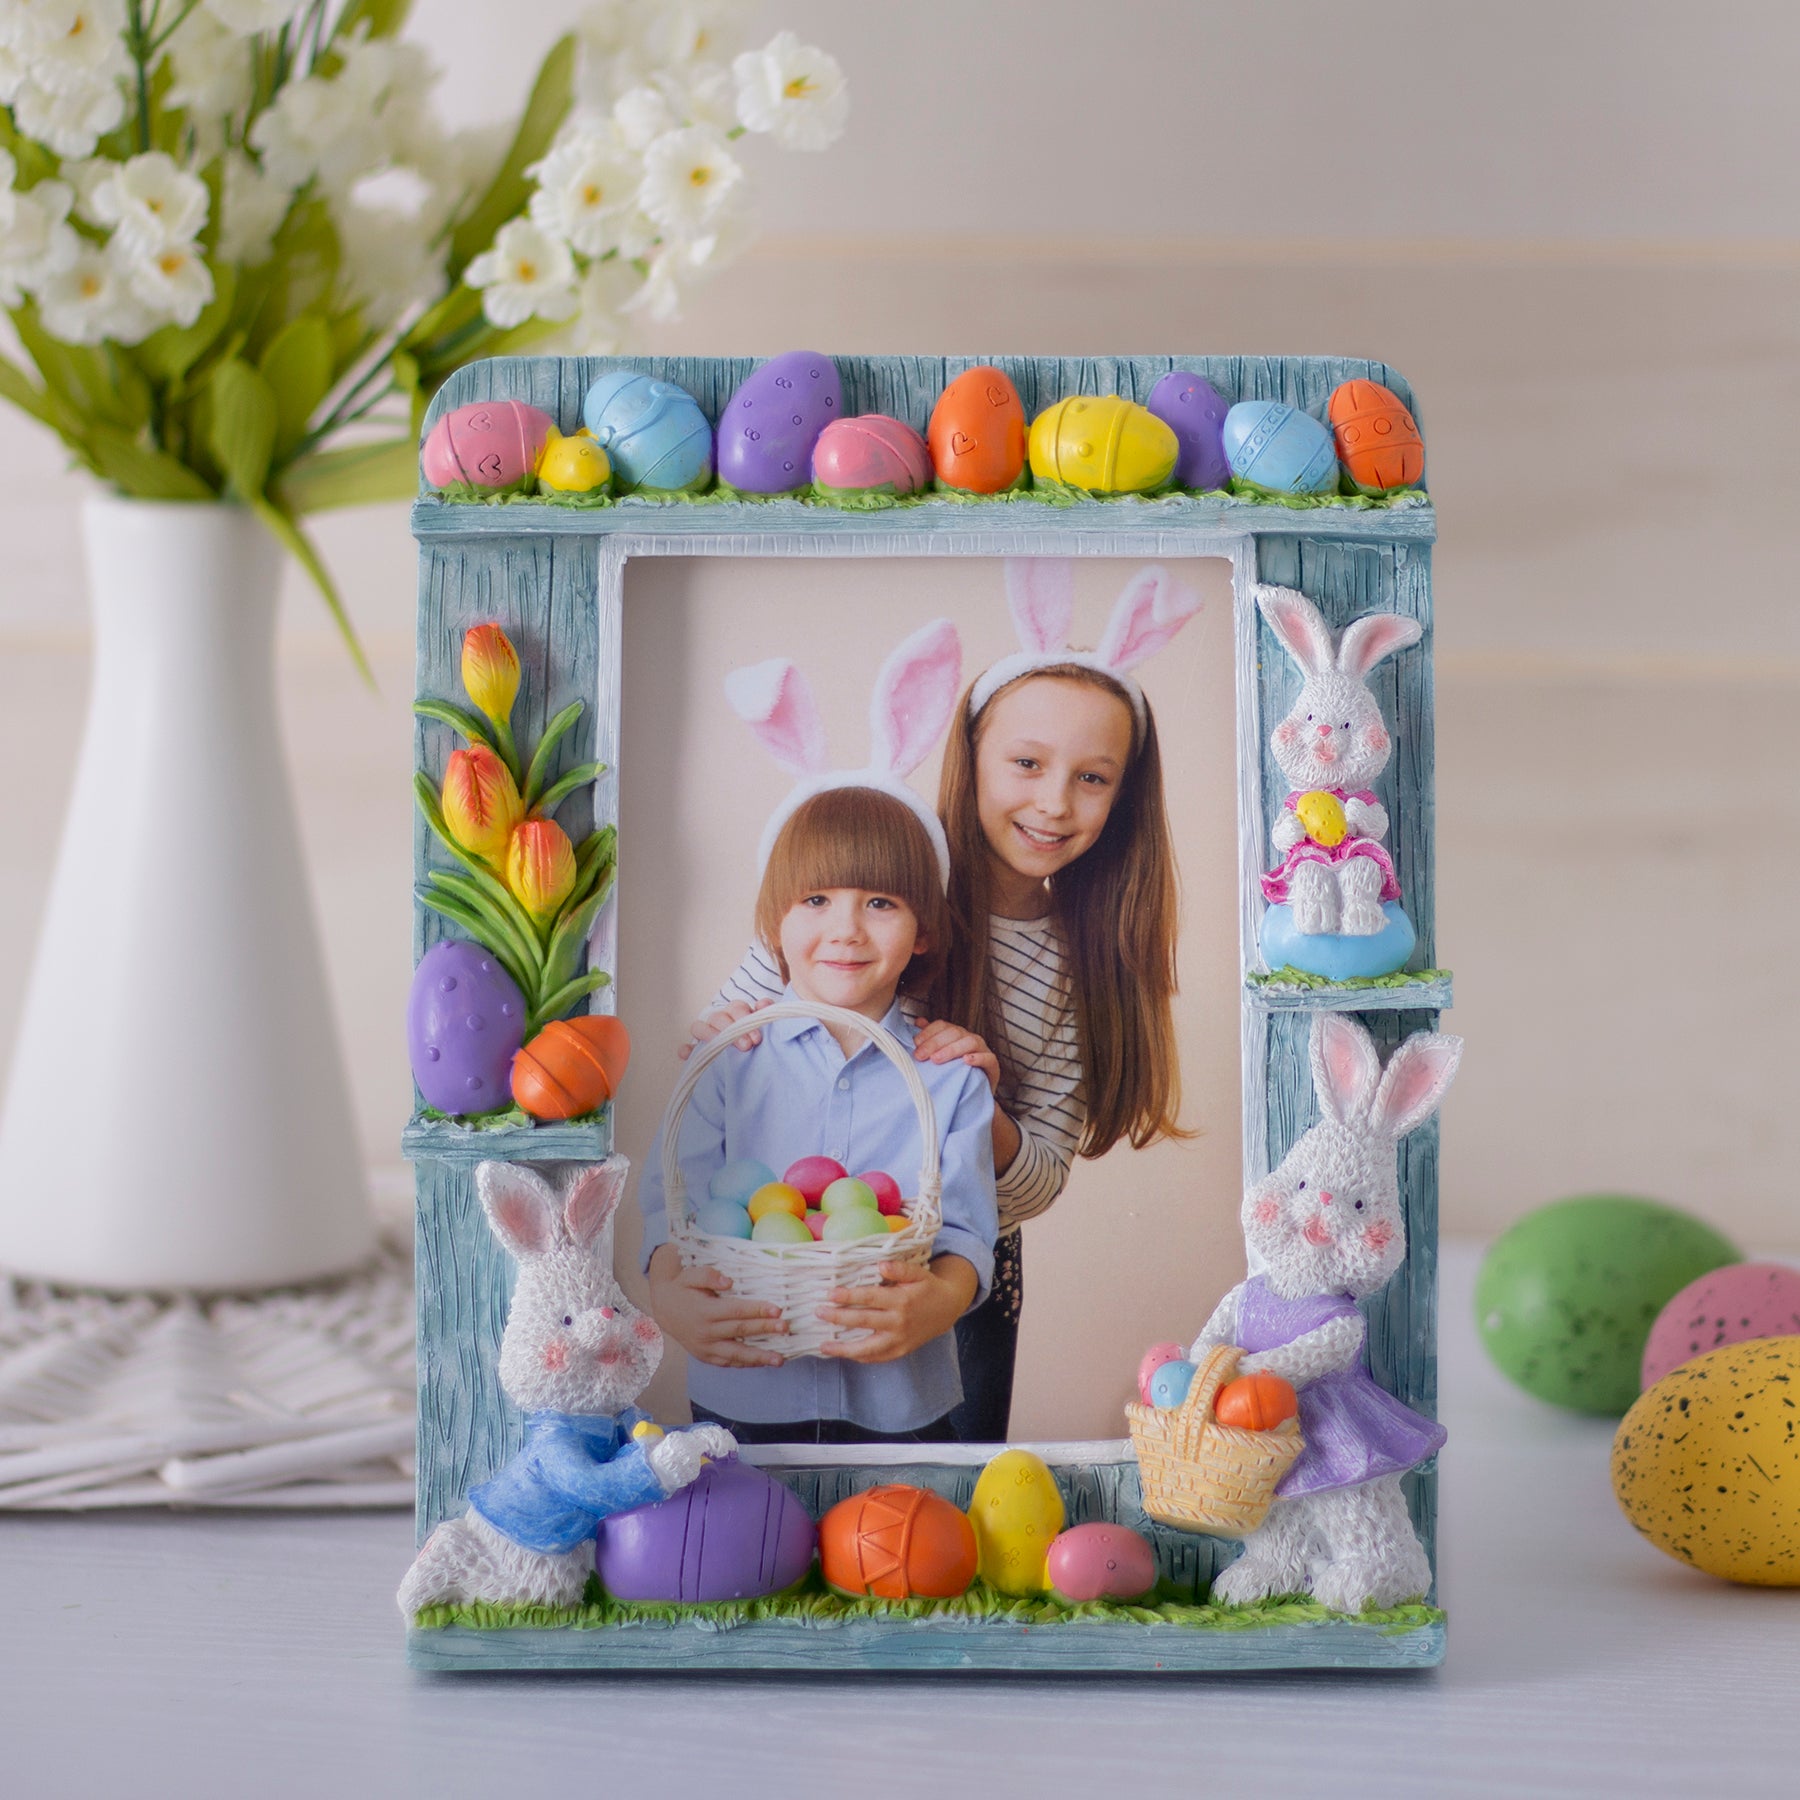 Marco de fotos de resina con huevos y conejitos de Pascua